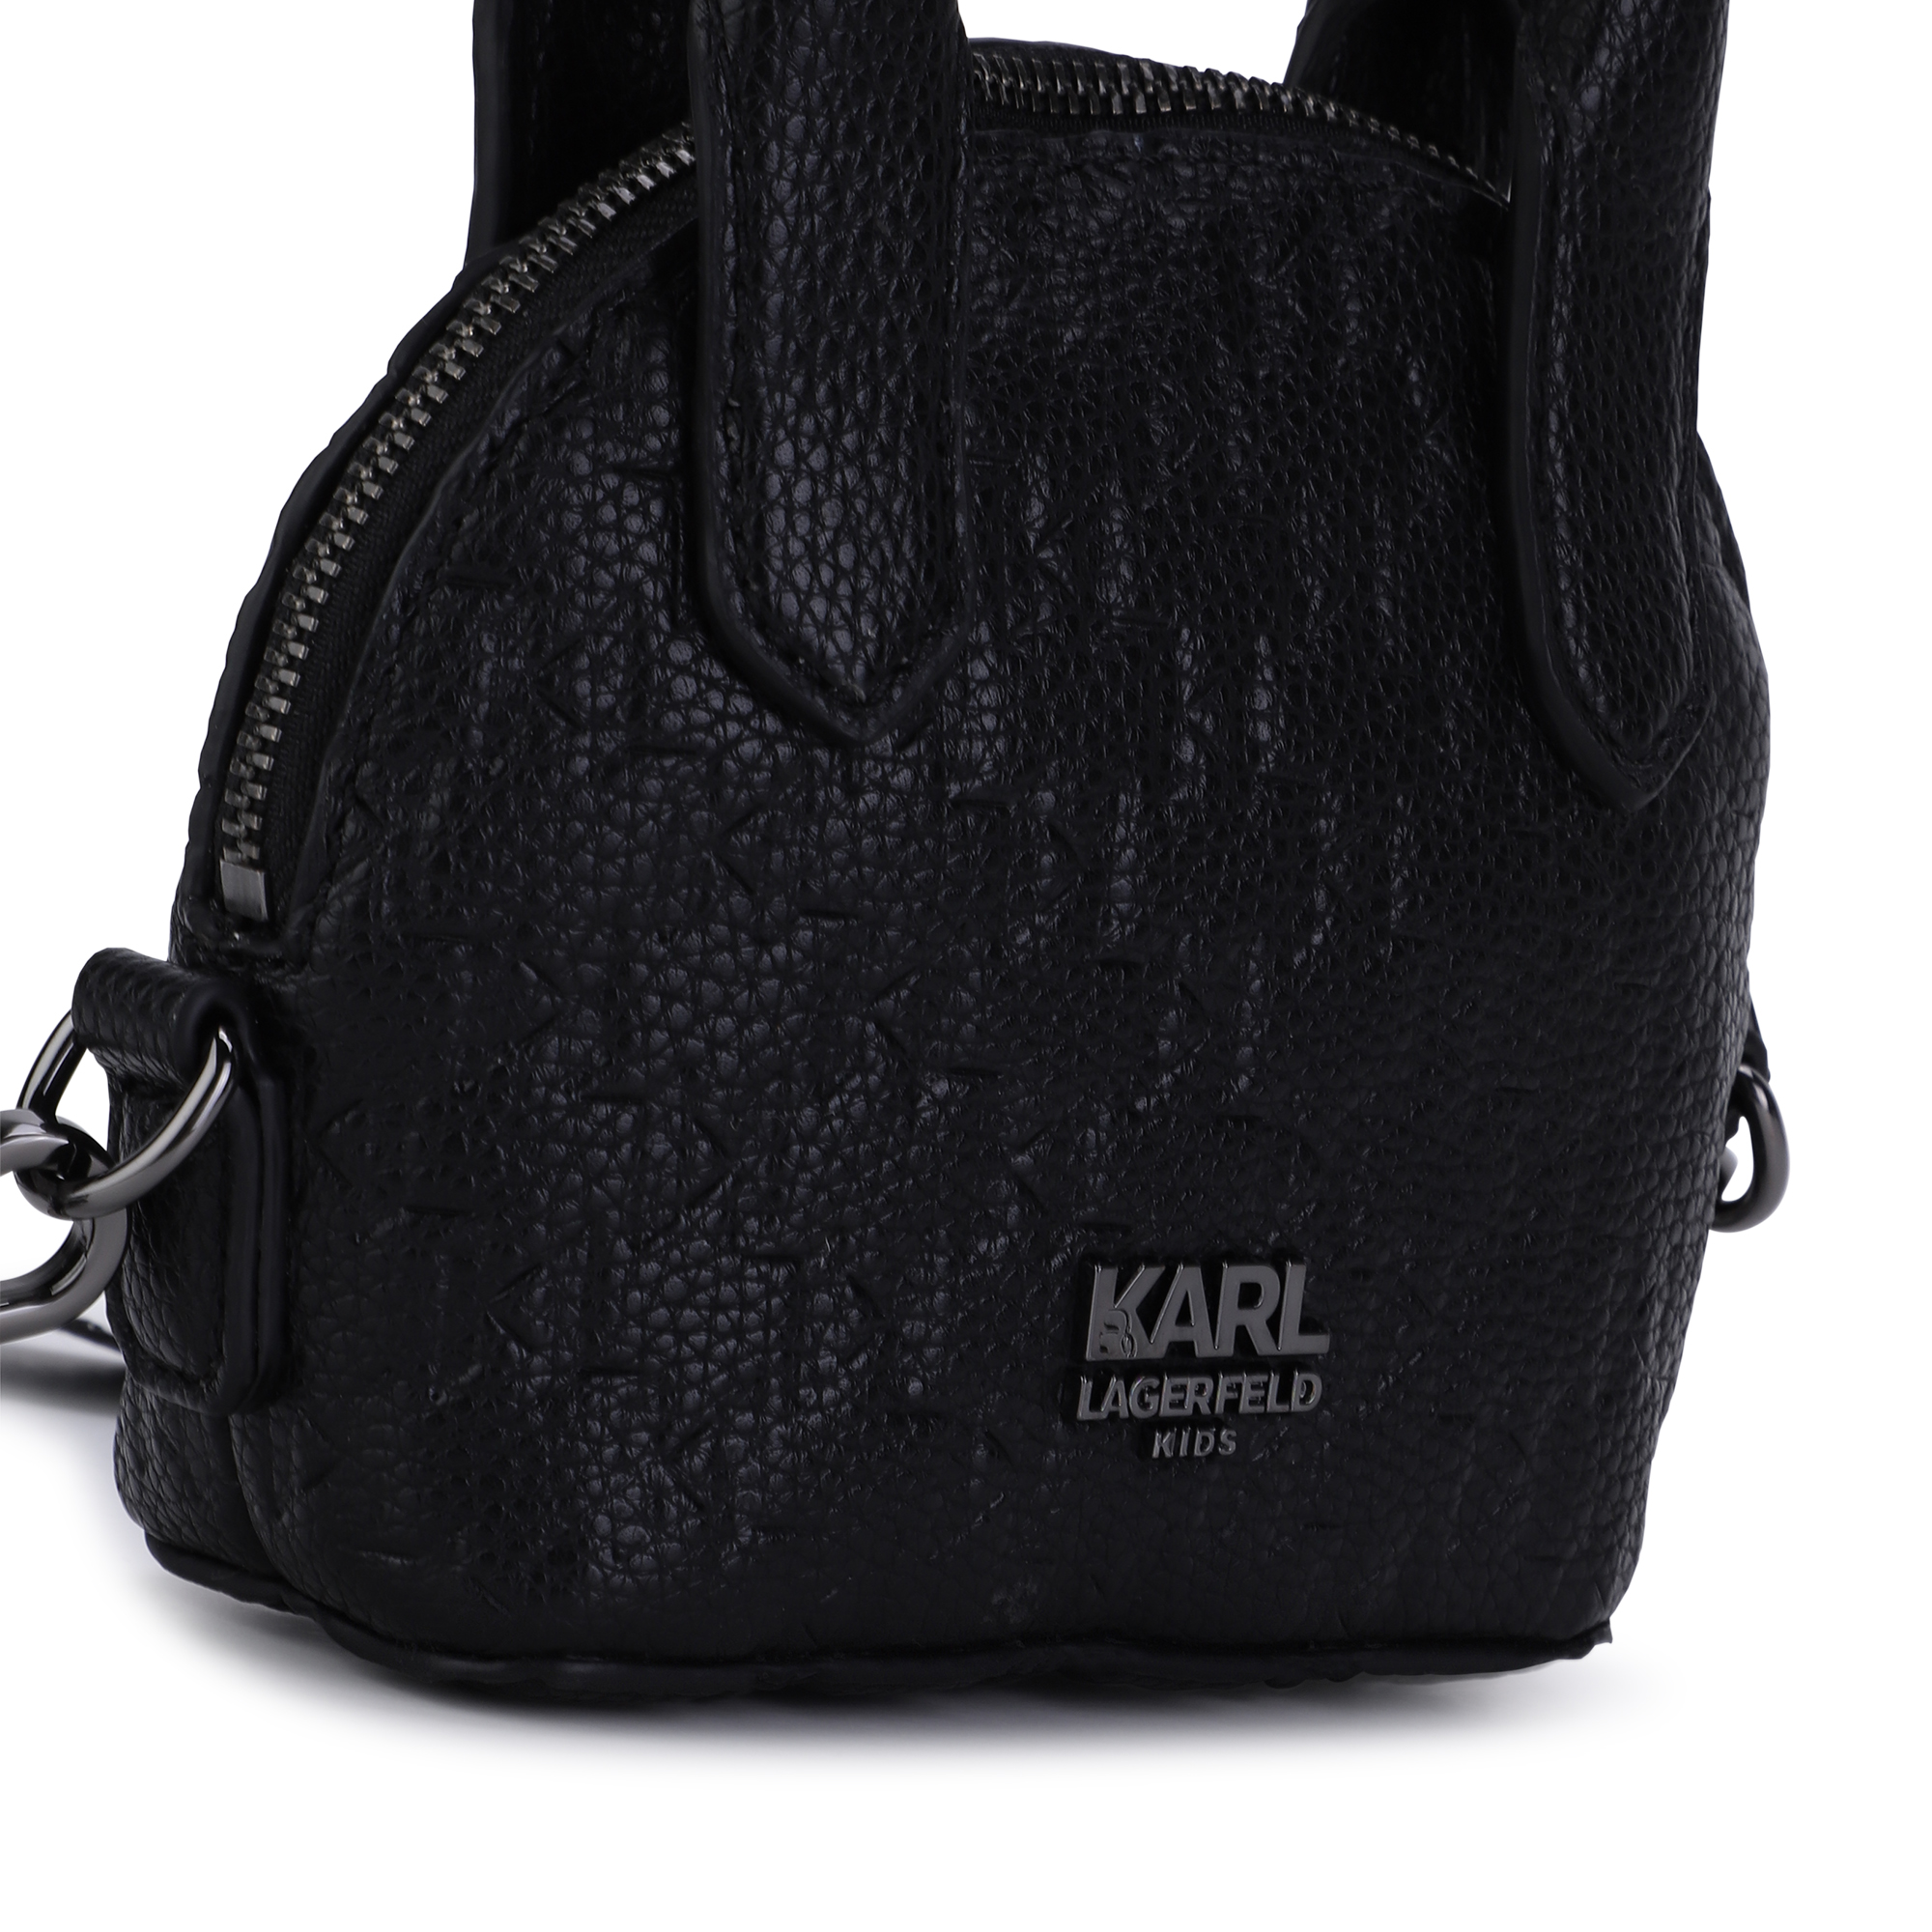 Mini shoulder bag KARL LAGERFELD KIDS for GIRL